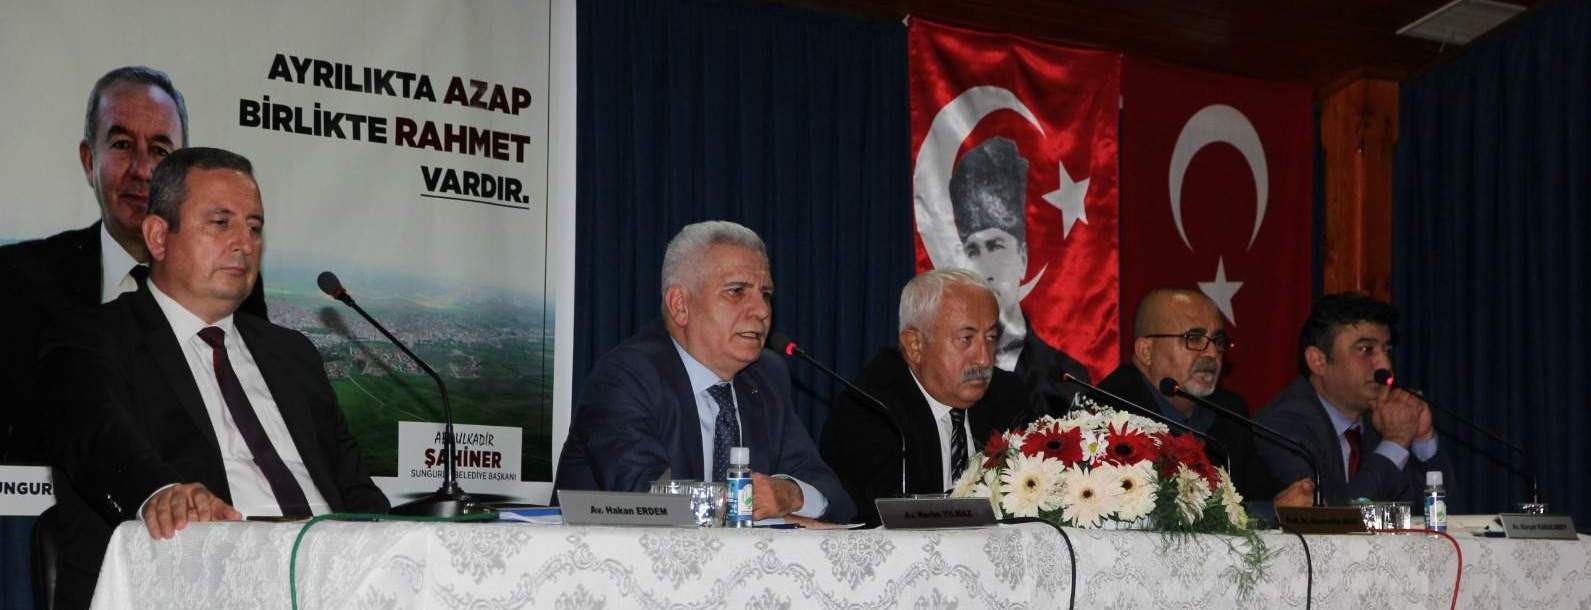 Sungurlu Belediyesinden Türklerin İnanç Sistemi ve Alevilik konferansı #corum